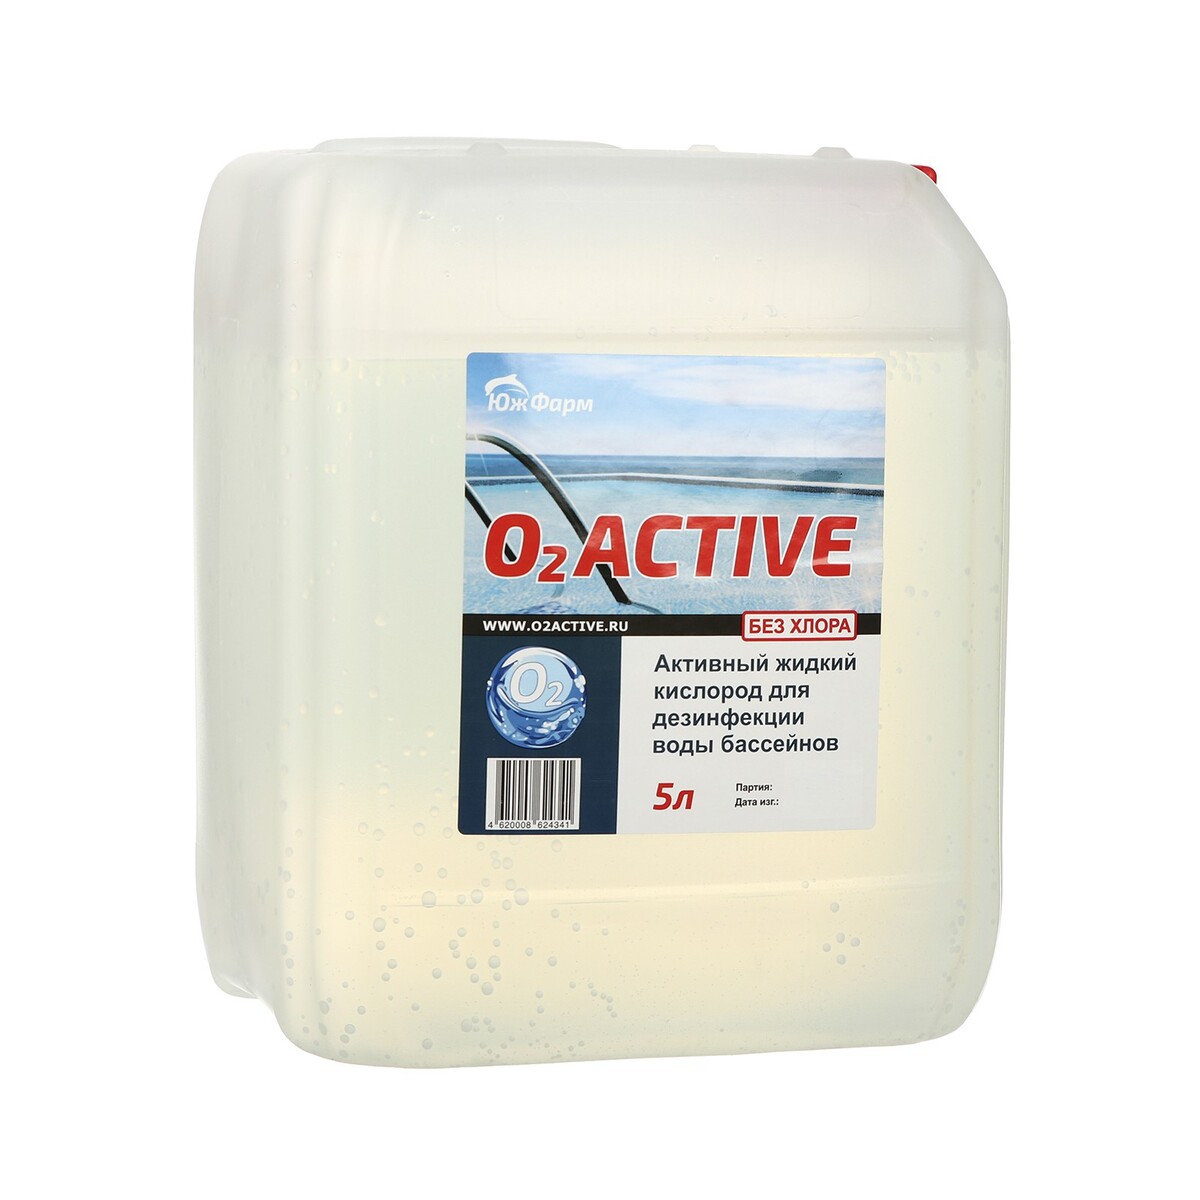 О2 active, средство для дезинфекции воды бассейнов, 5 л лекарственные средства для дезинфекции применяемые в ветеринарной медицине